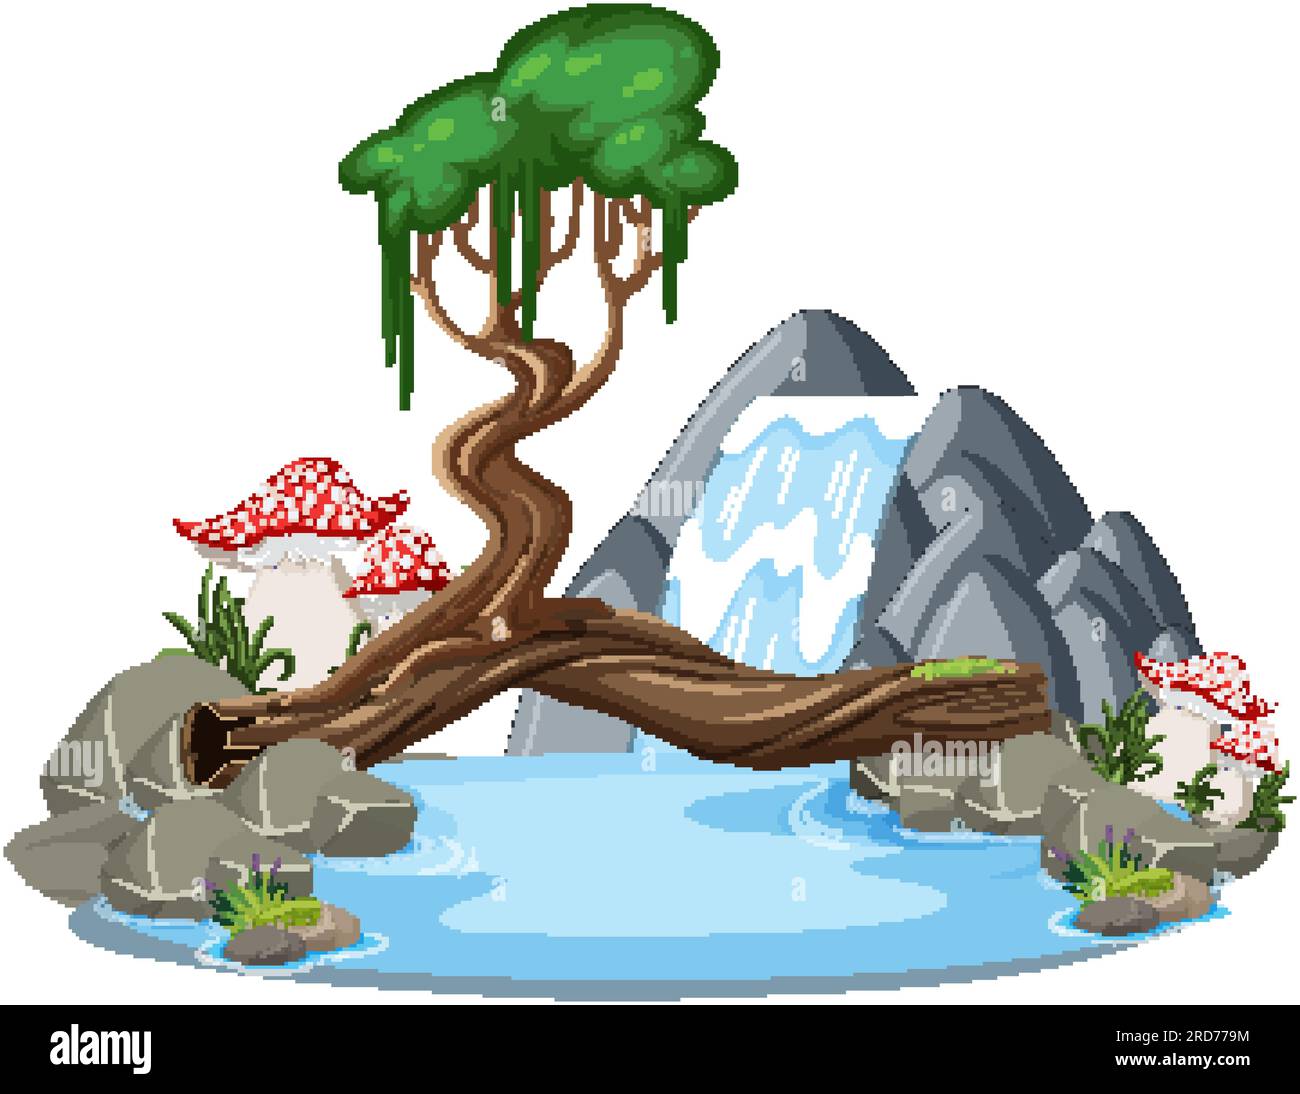 Cascada con árbol en ilustración de estilo de dibujos animados Ilustración del Vector